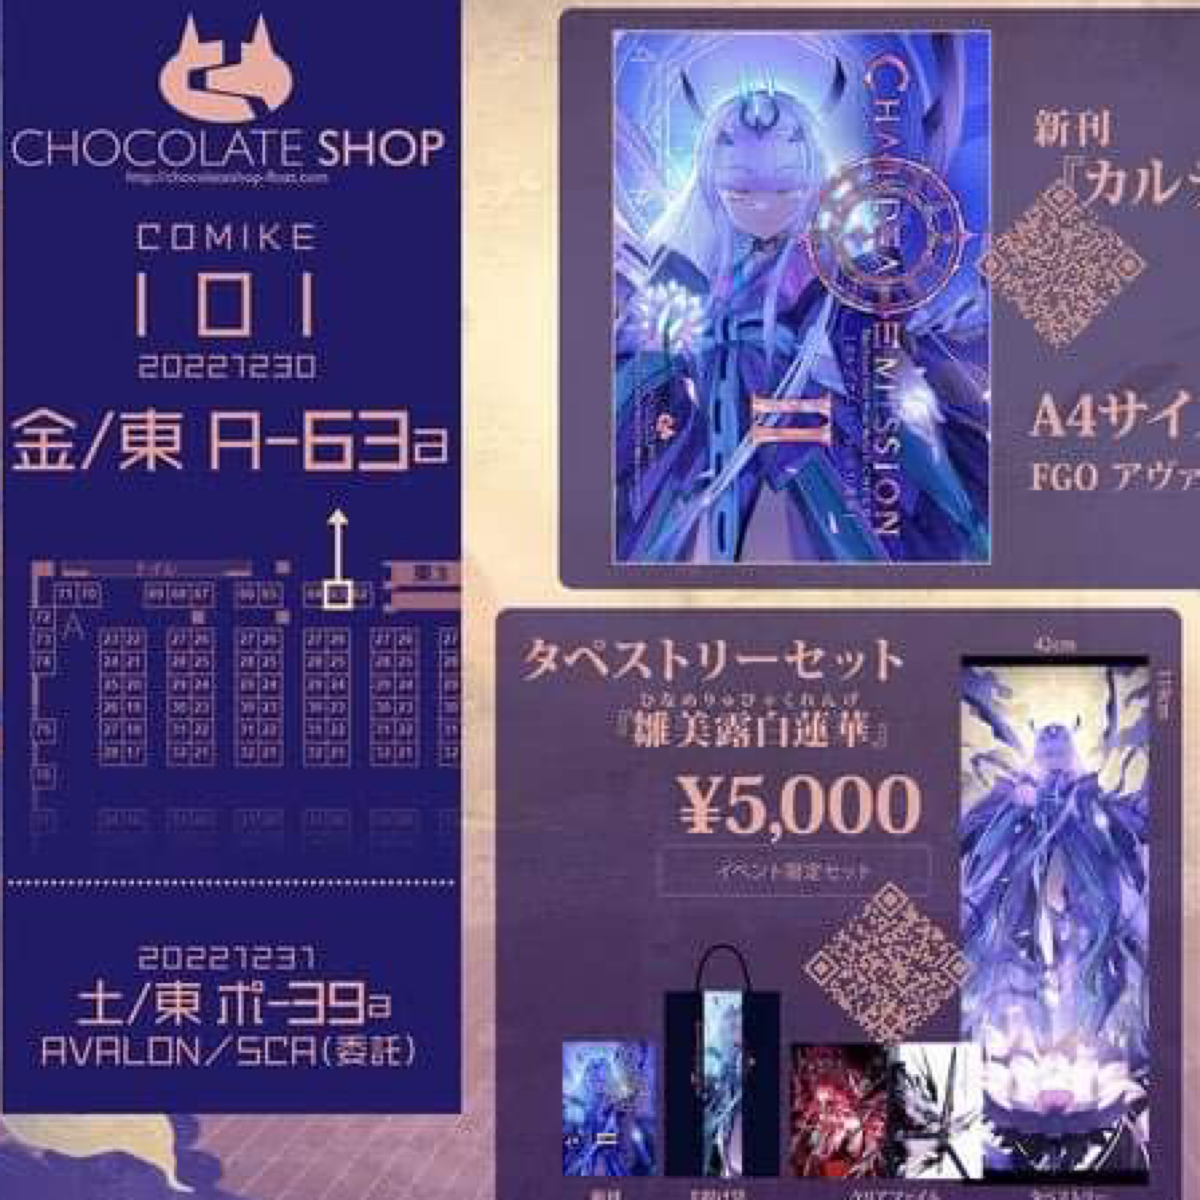 C101 CHOCO タペストリーセット (¥5000) | Request Details